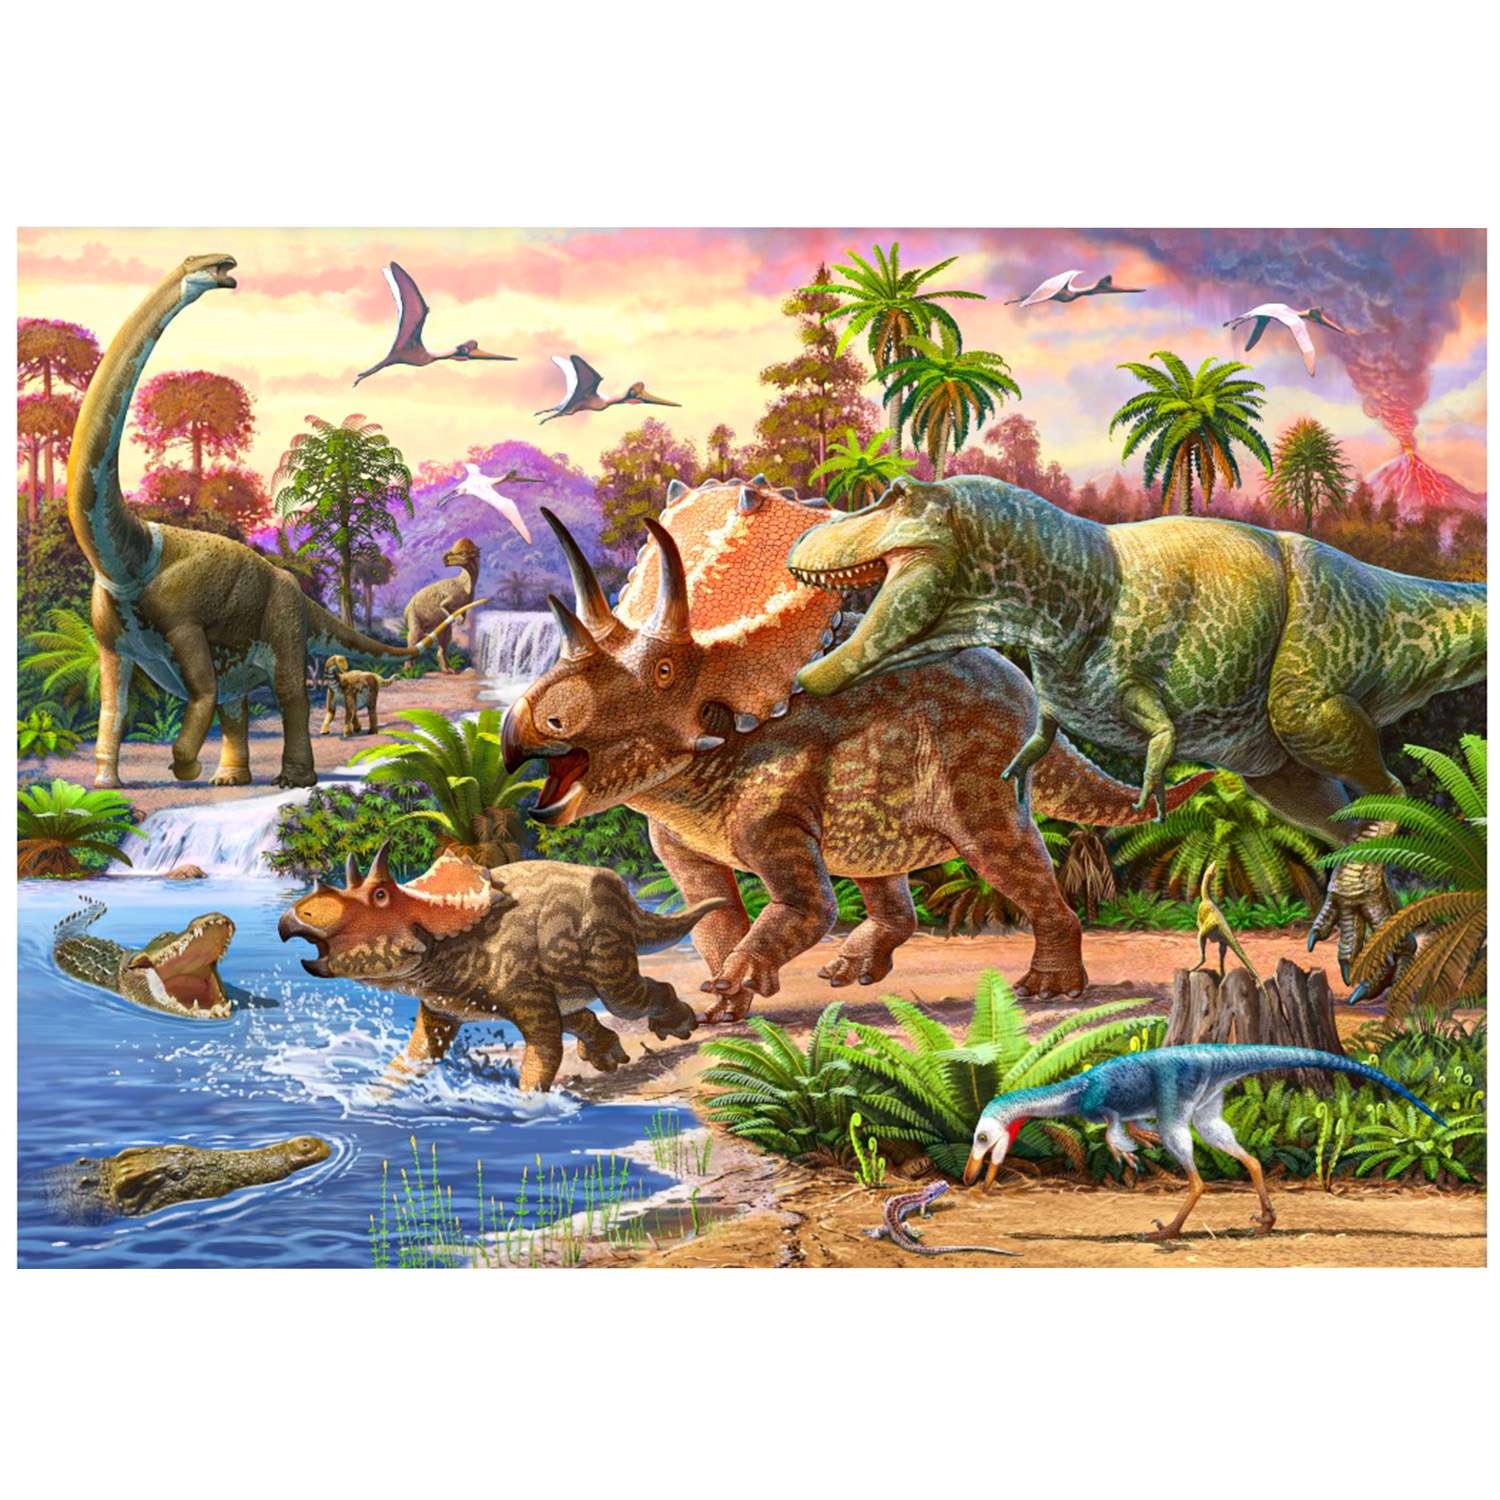 Картина по номерам Рыжий кот Эра динозавров 30х40 - фото 1